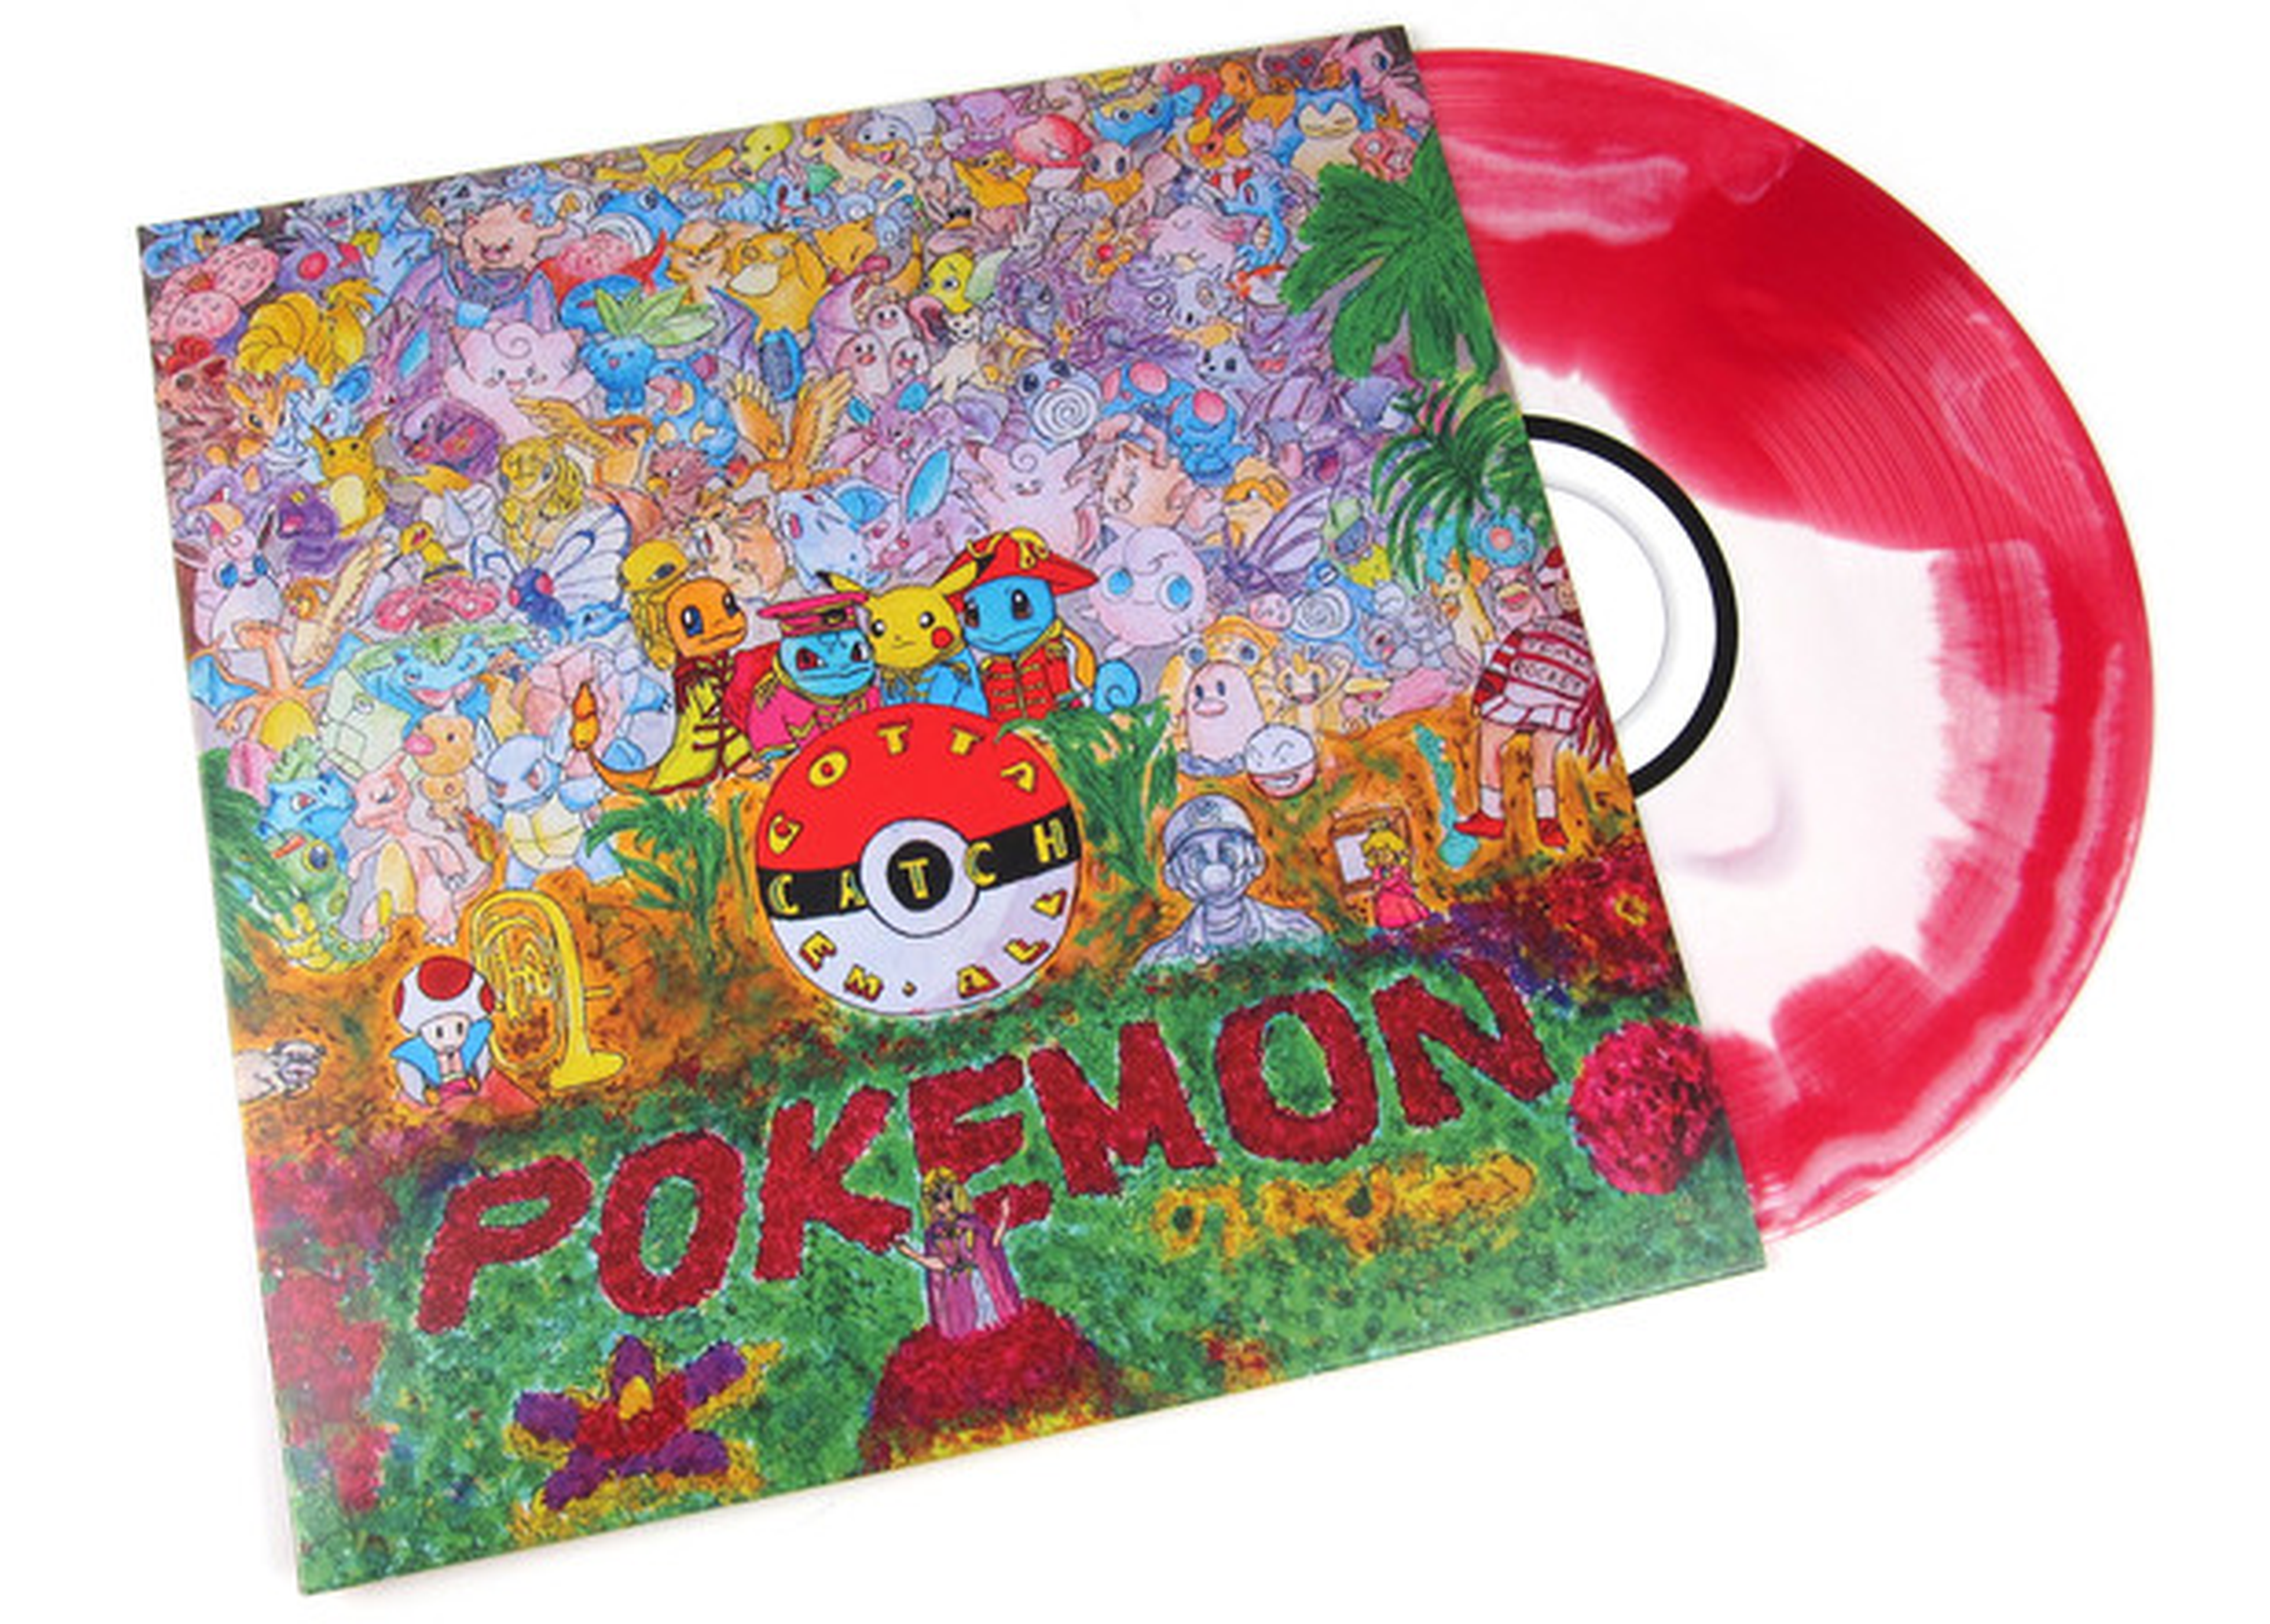 Pokémon Rojo y Azul - Banda sonora disponible en disco de vinilo